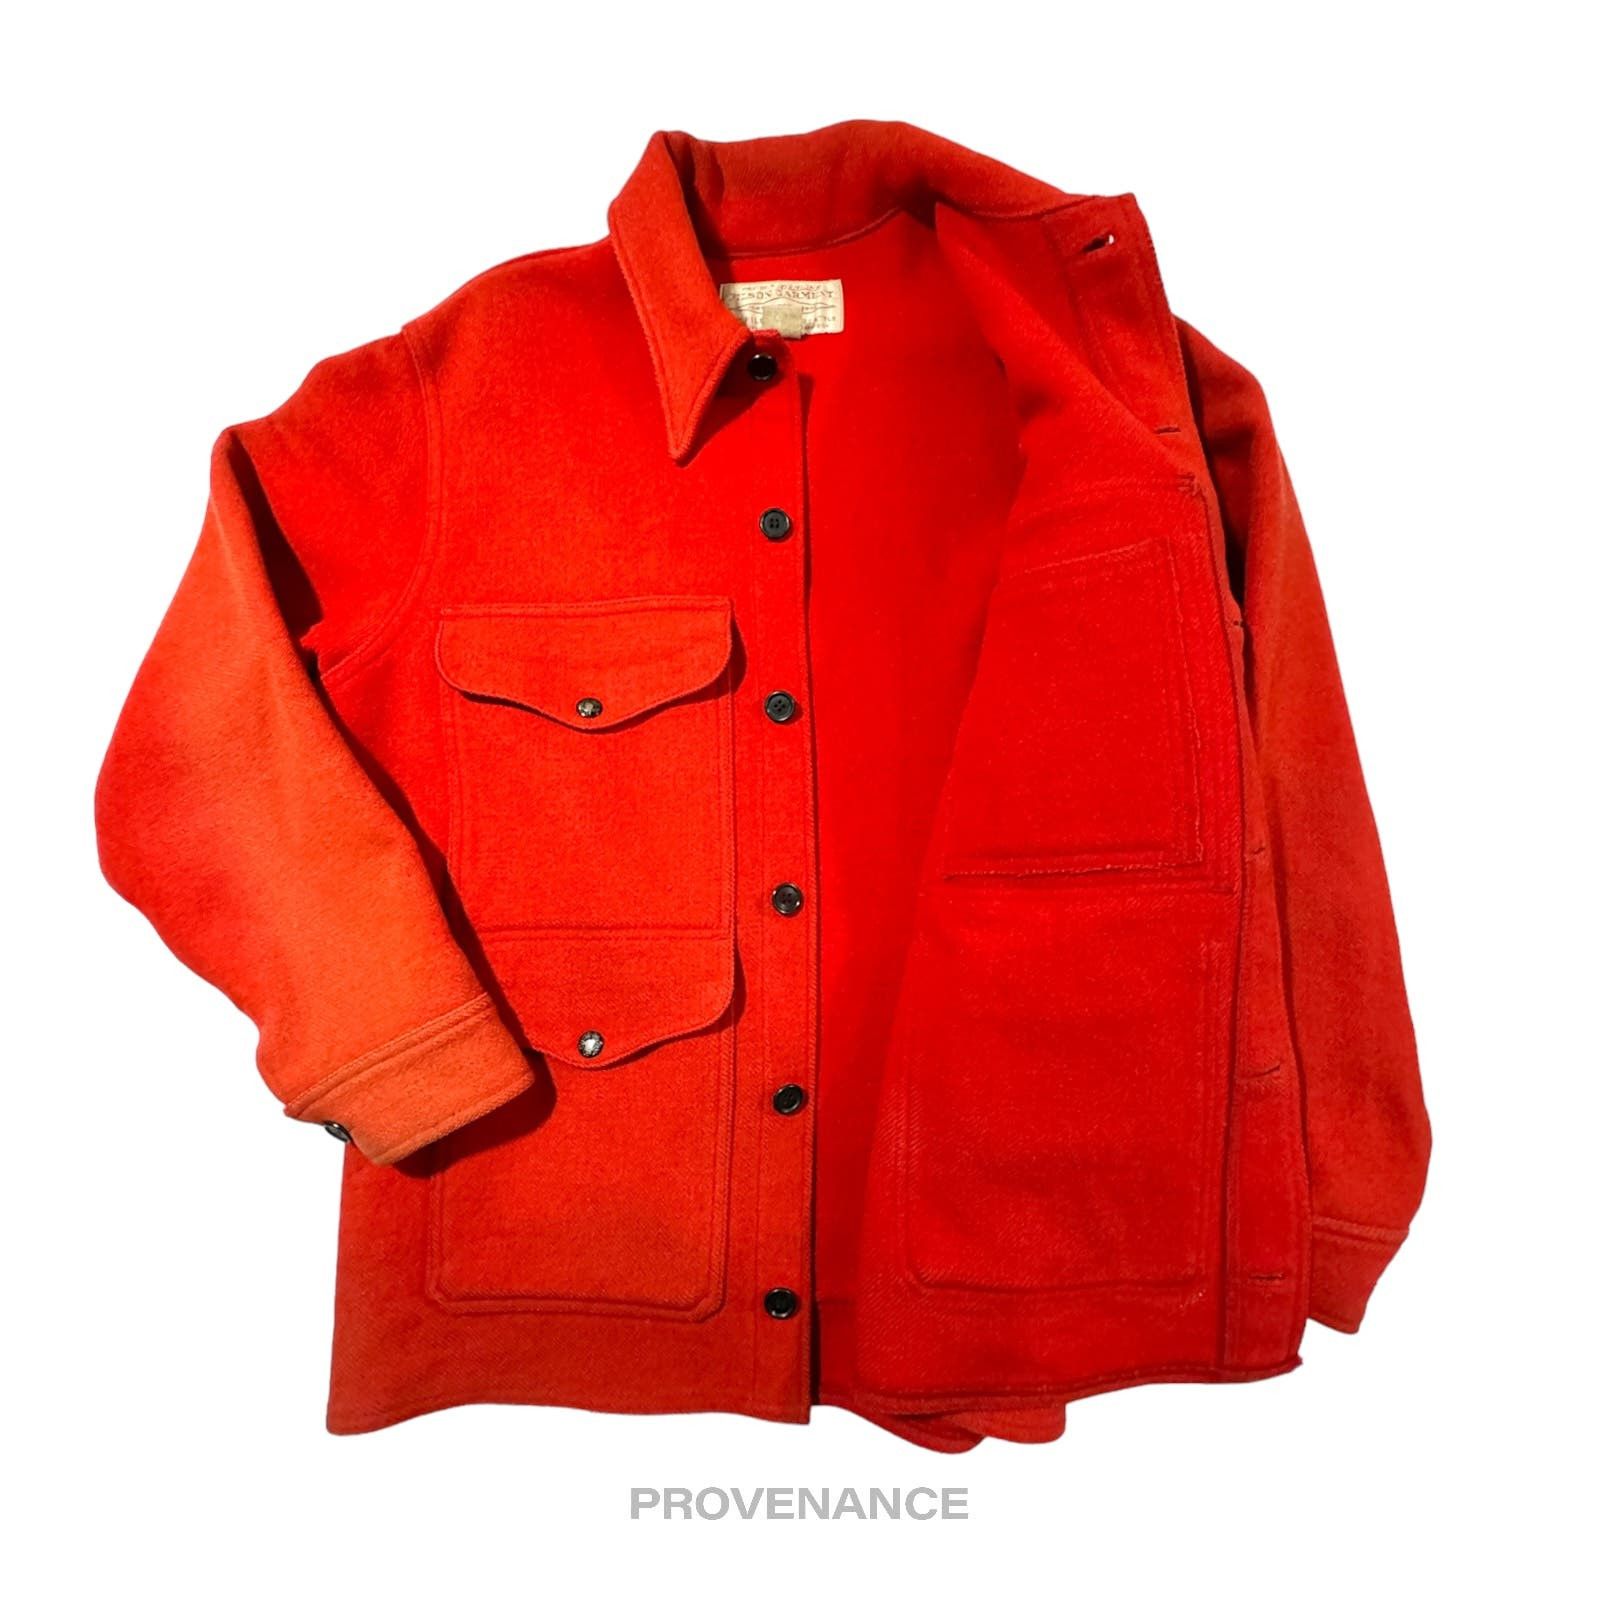 Filson 🔴 Filson Mackinaw Wool Cruiser Jacket - Scarlet Red 42 M Size US M / EU 48-50 / 2 - 3 Thumbnail